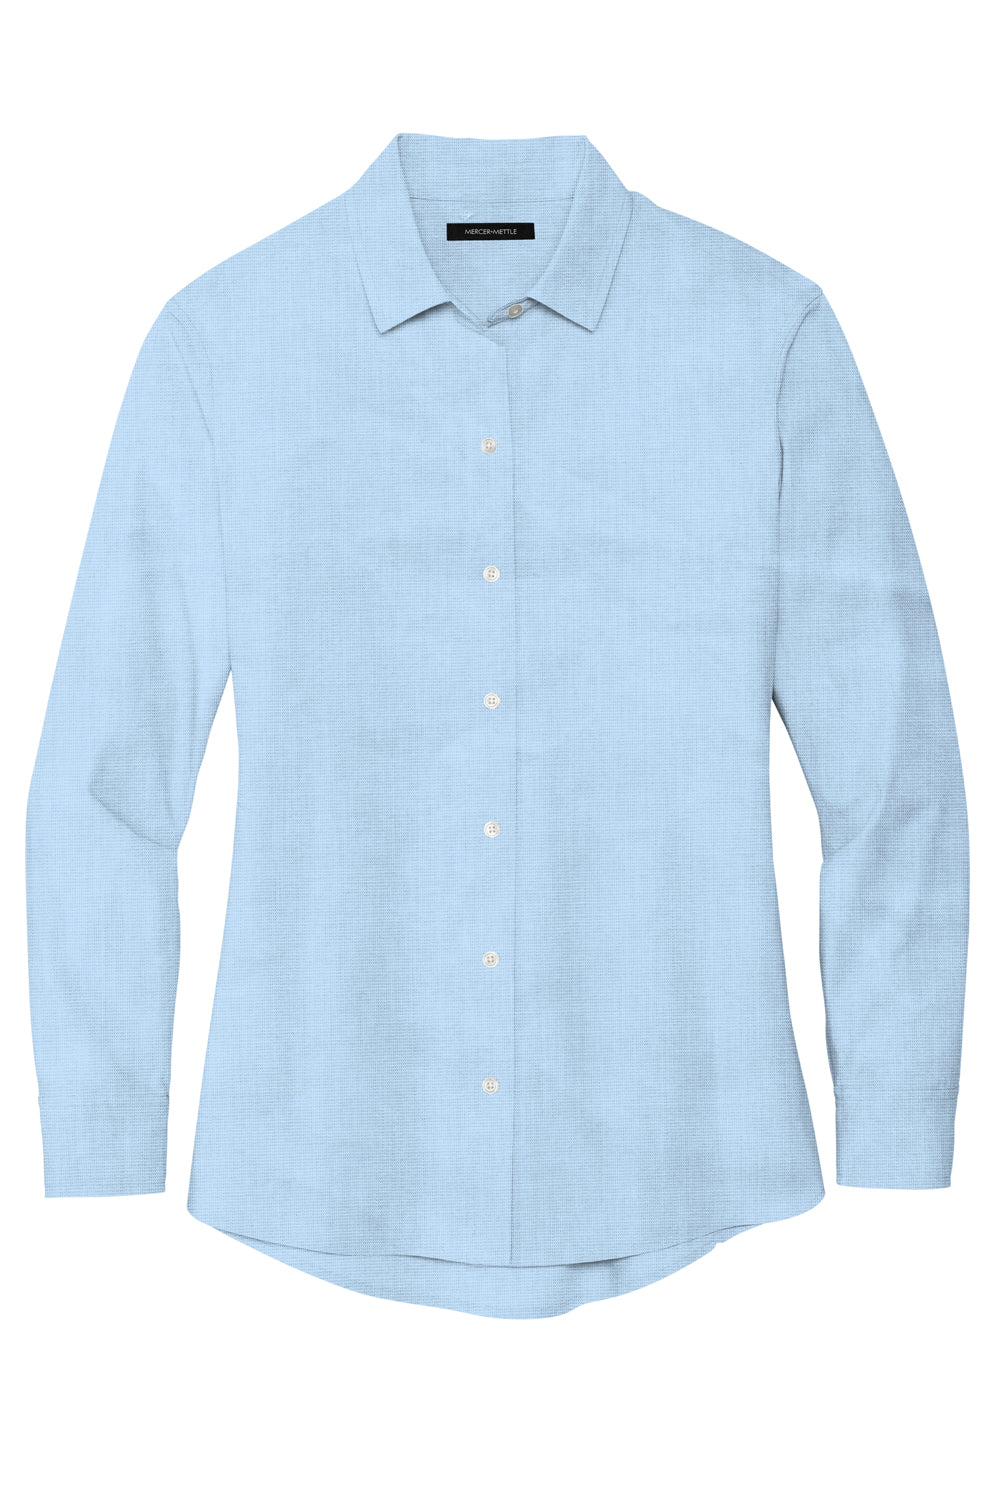 Mercer+Mettle MM2001 Stretch Woven Long Sleeve Button Down Shirt Air Blue Flat Front